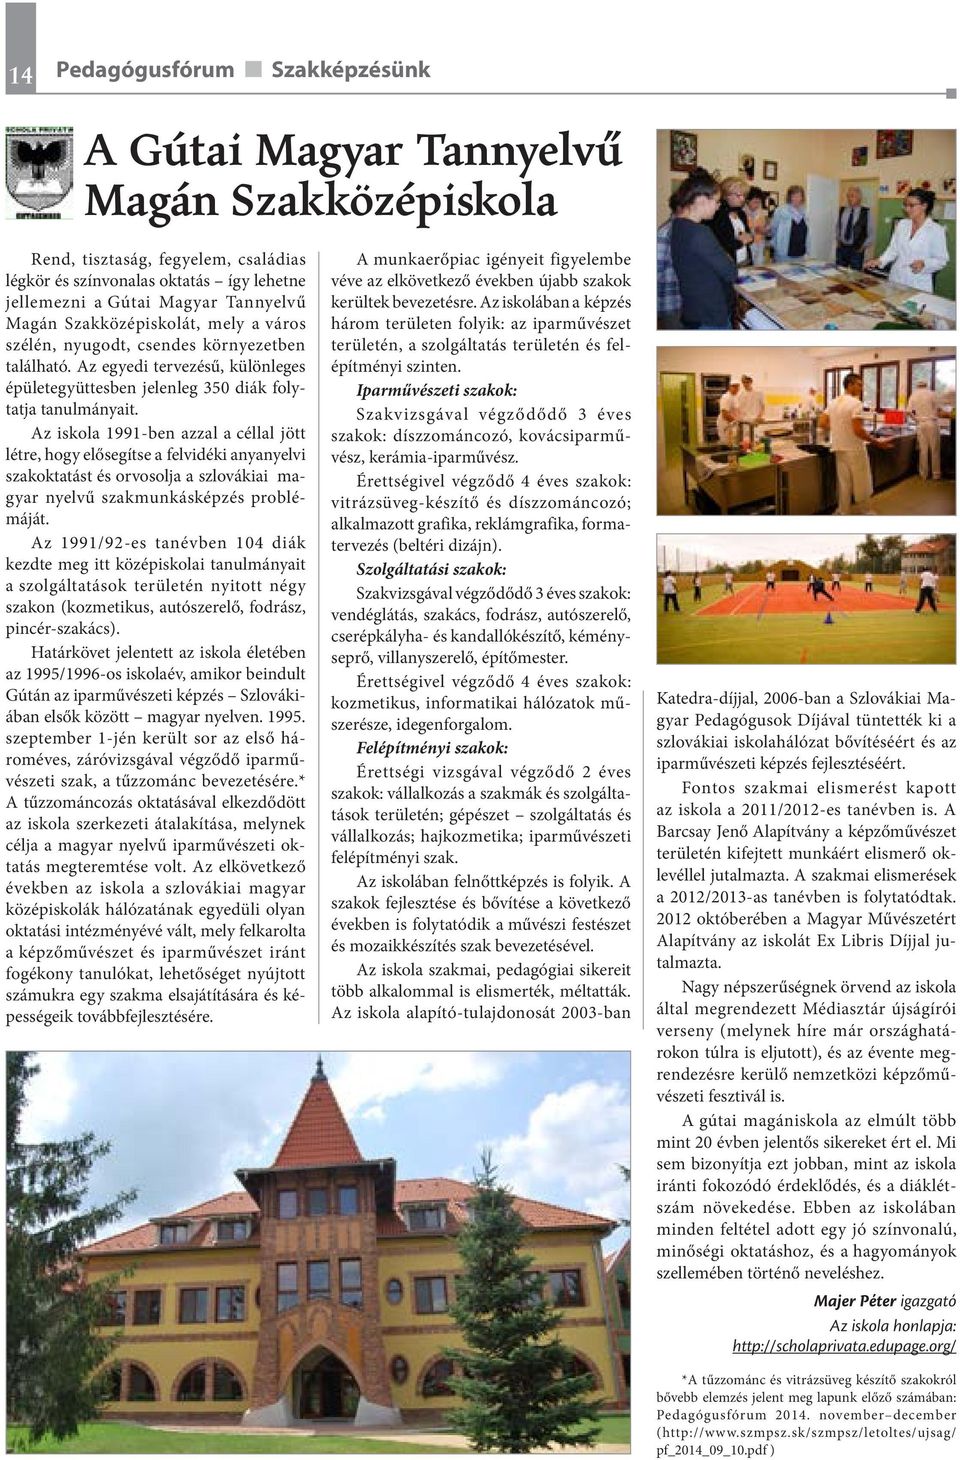 Az iskola 1991-ben azzal a céllal jött létre, hogy elősegítse a felvidéki anyanyelvi szakoktatást és orvosolja a szlovákiai magyar nyelvű szakmunkásképzés problémáját.